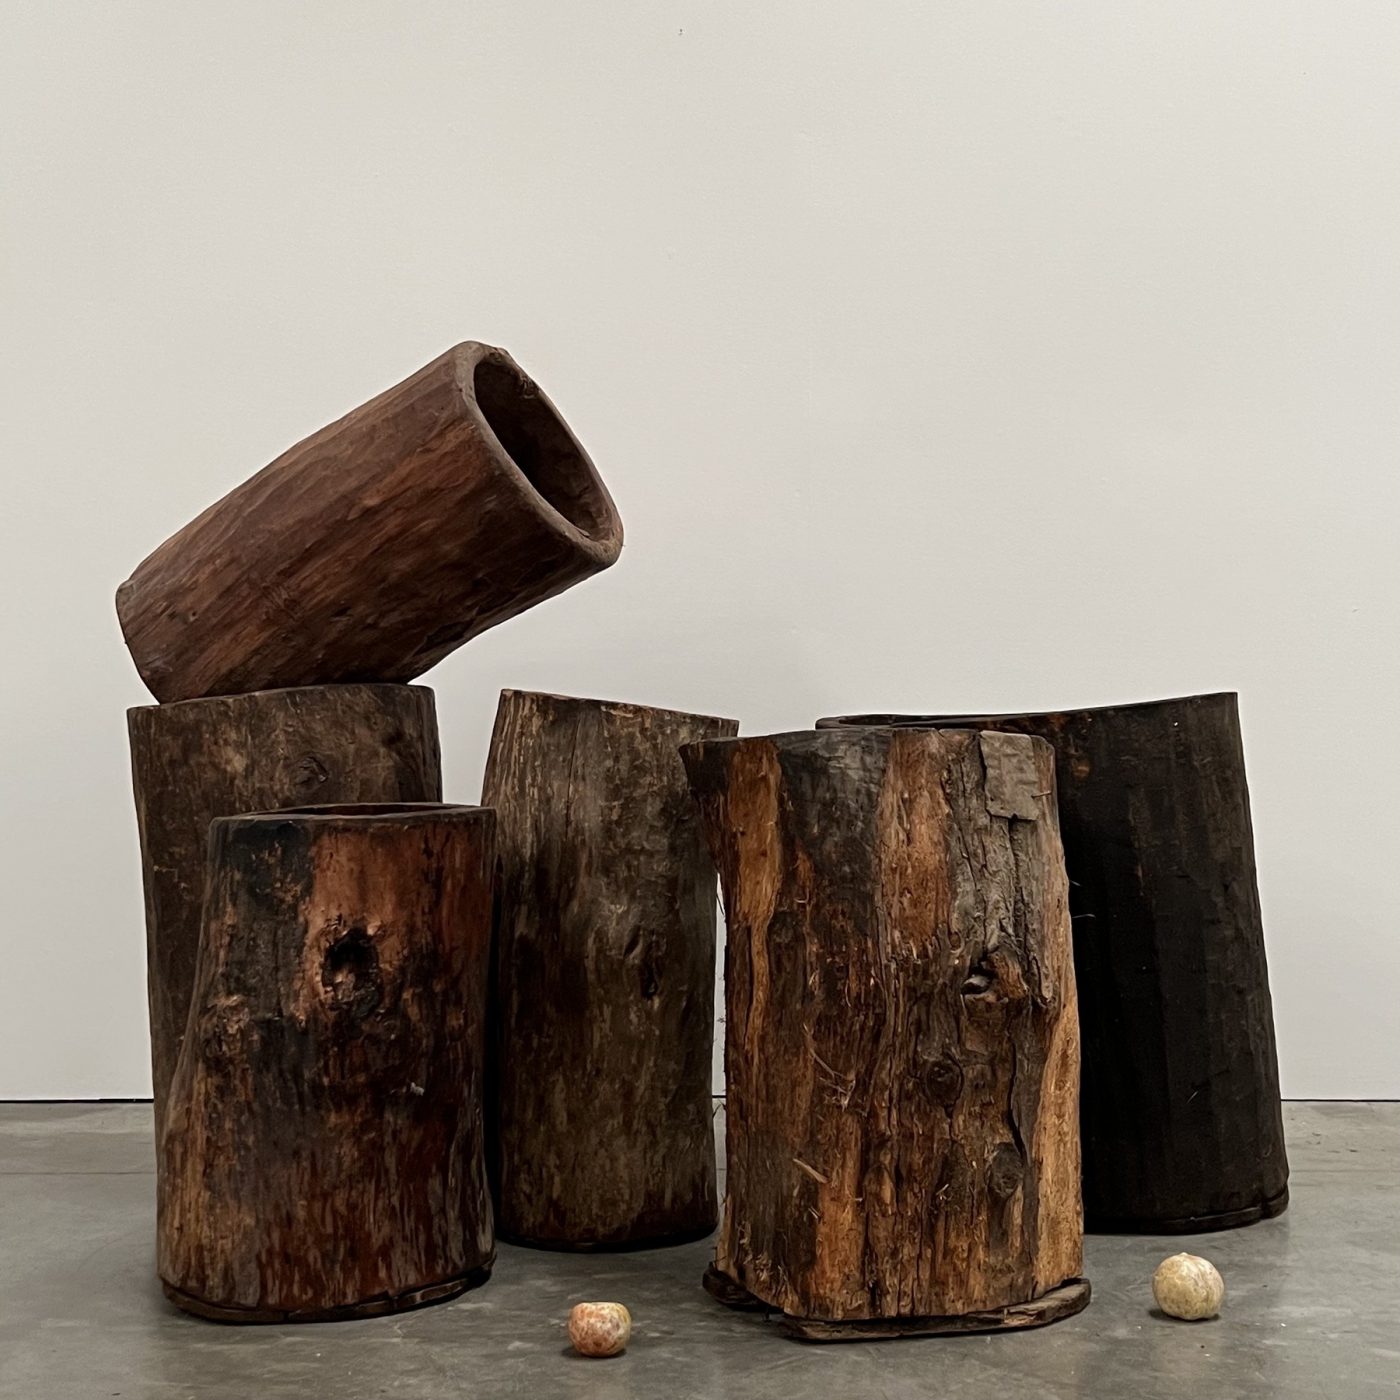 objet-vagabond-wooden-bins0009